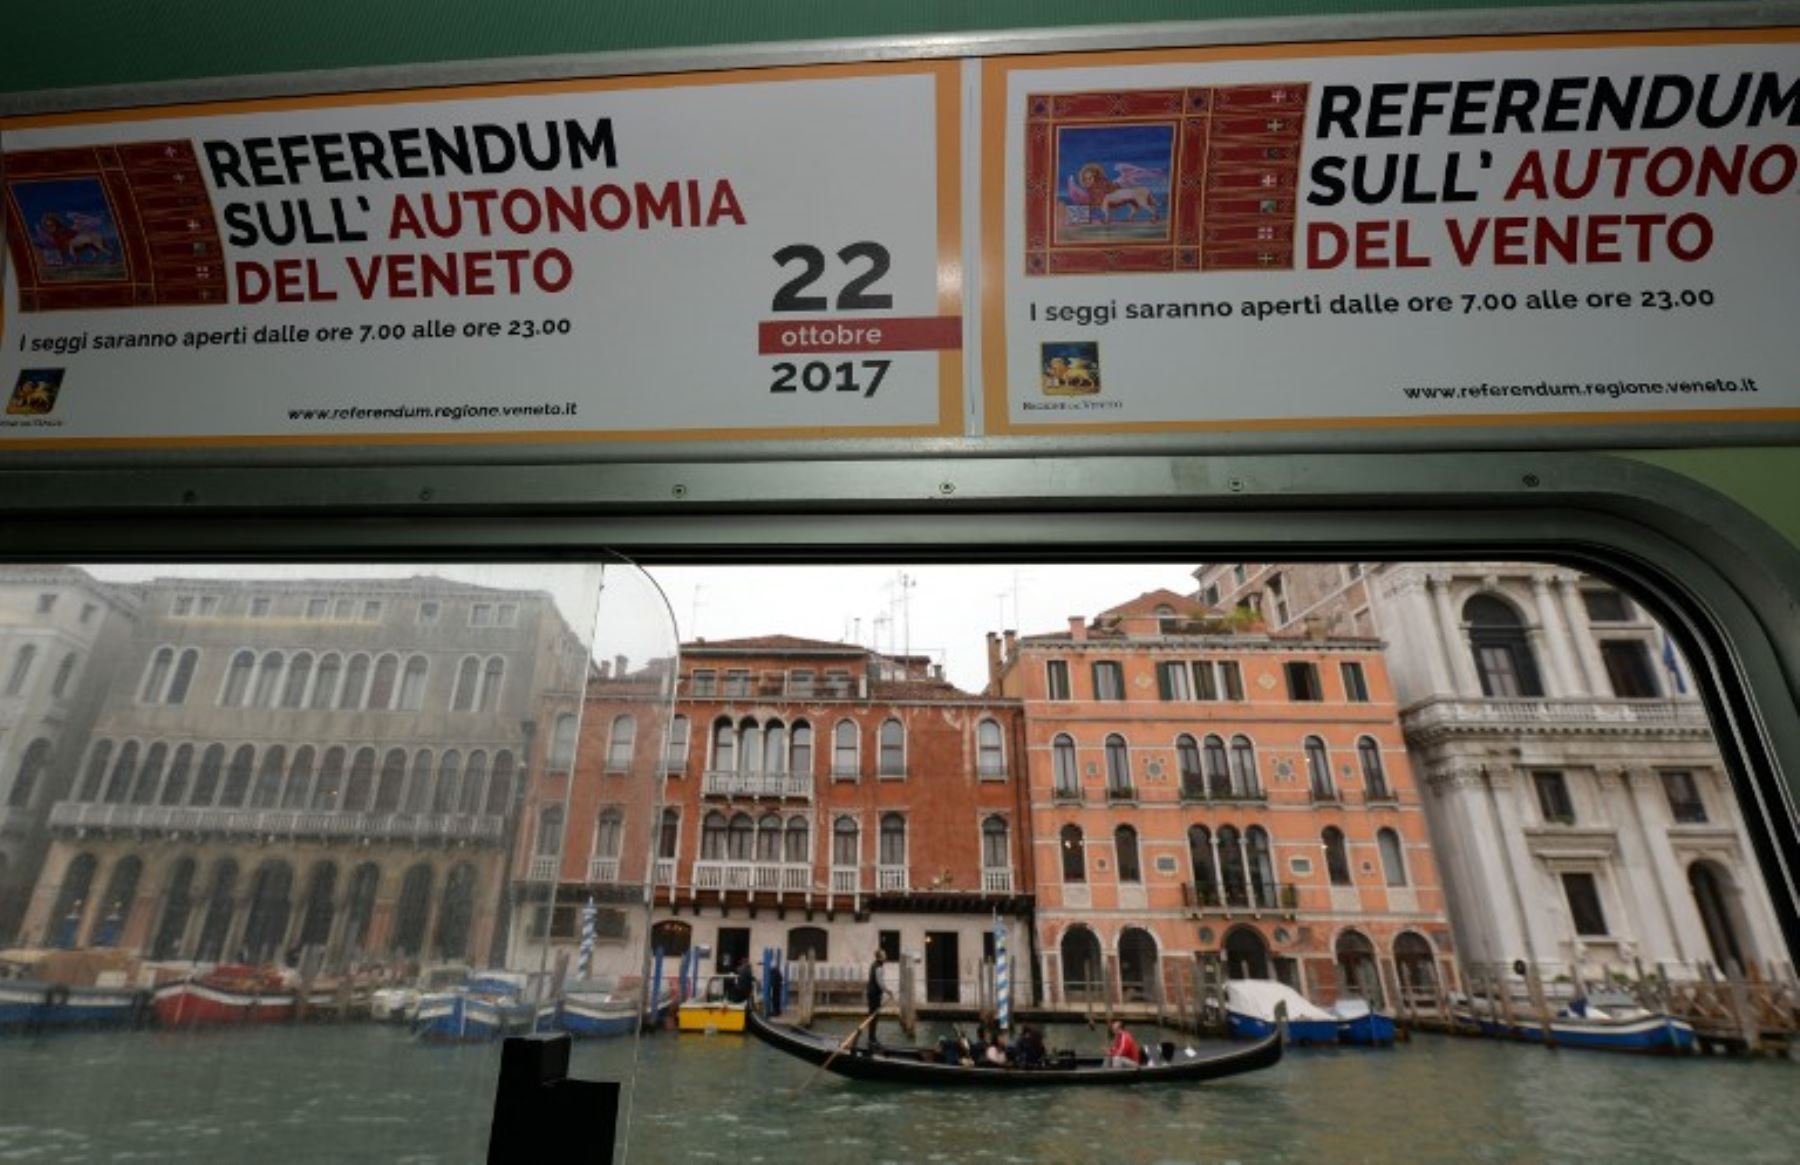 Hoy se realizó referéndum en el sur de Italia por autonomía.